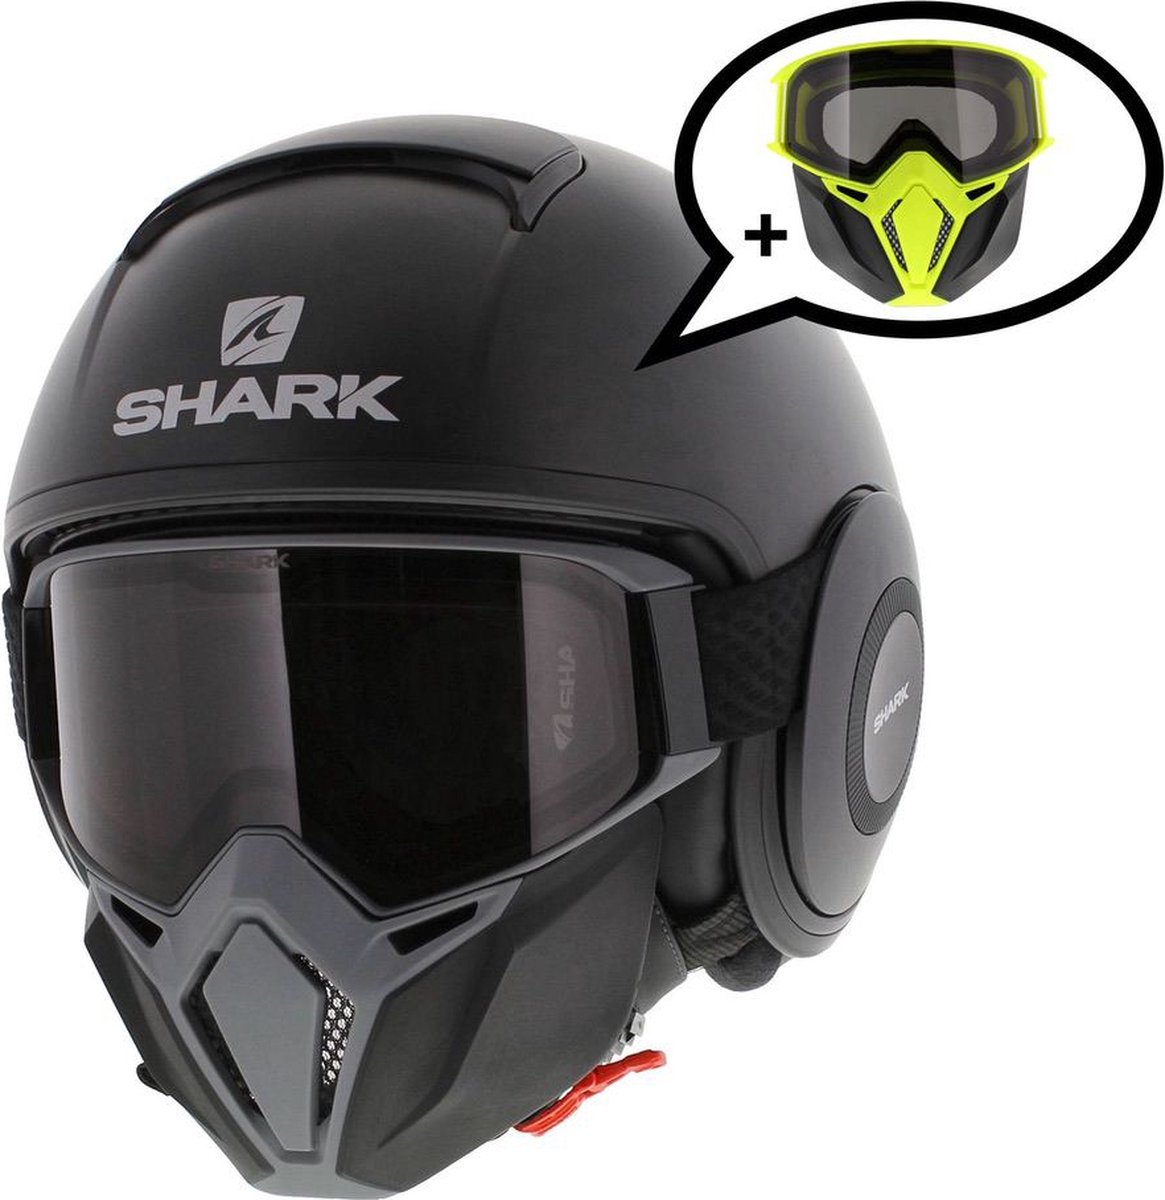 Shark Street Drak helm mat zwart antraciet M - Special Edition met gratis extra zwart geel mondstuk